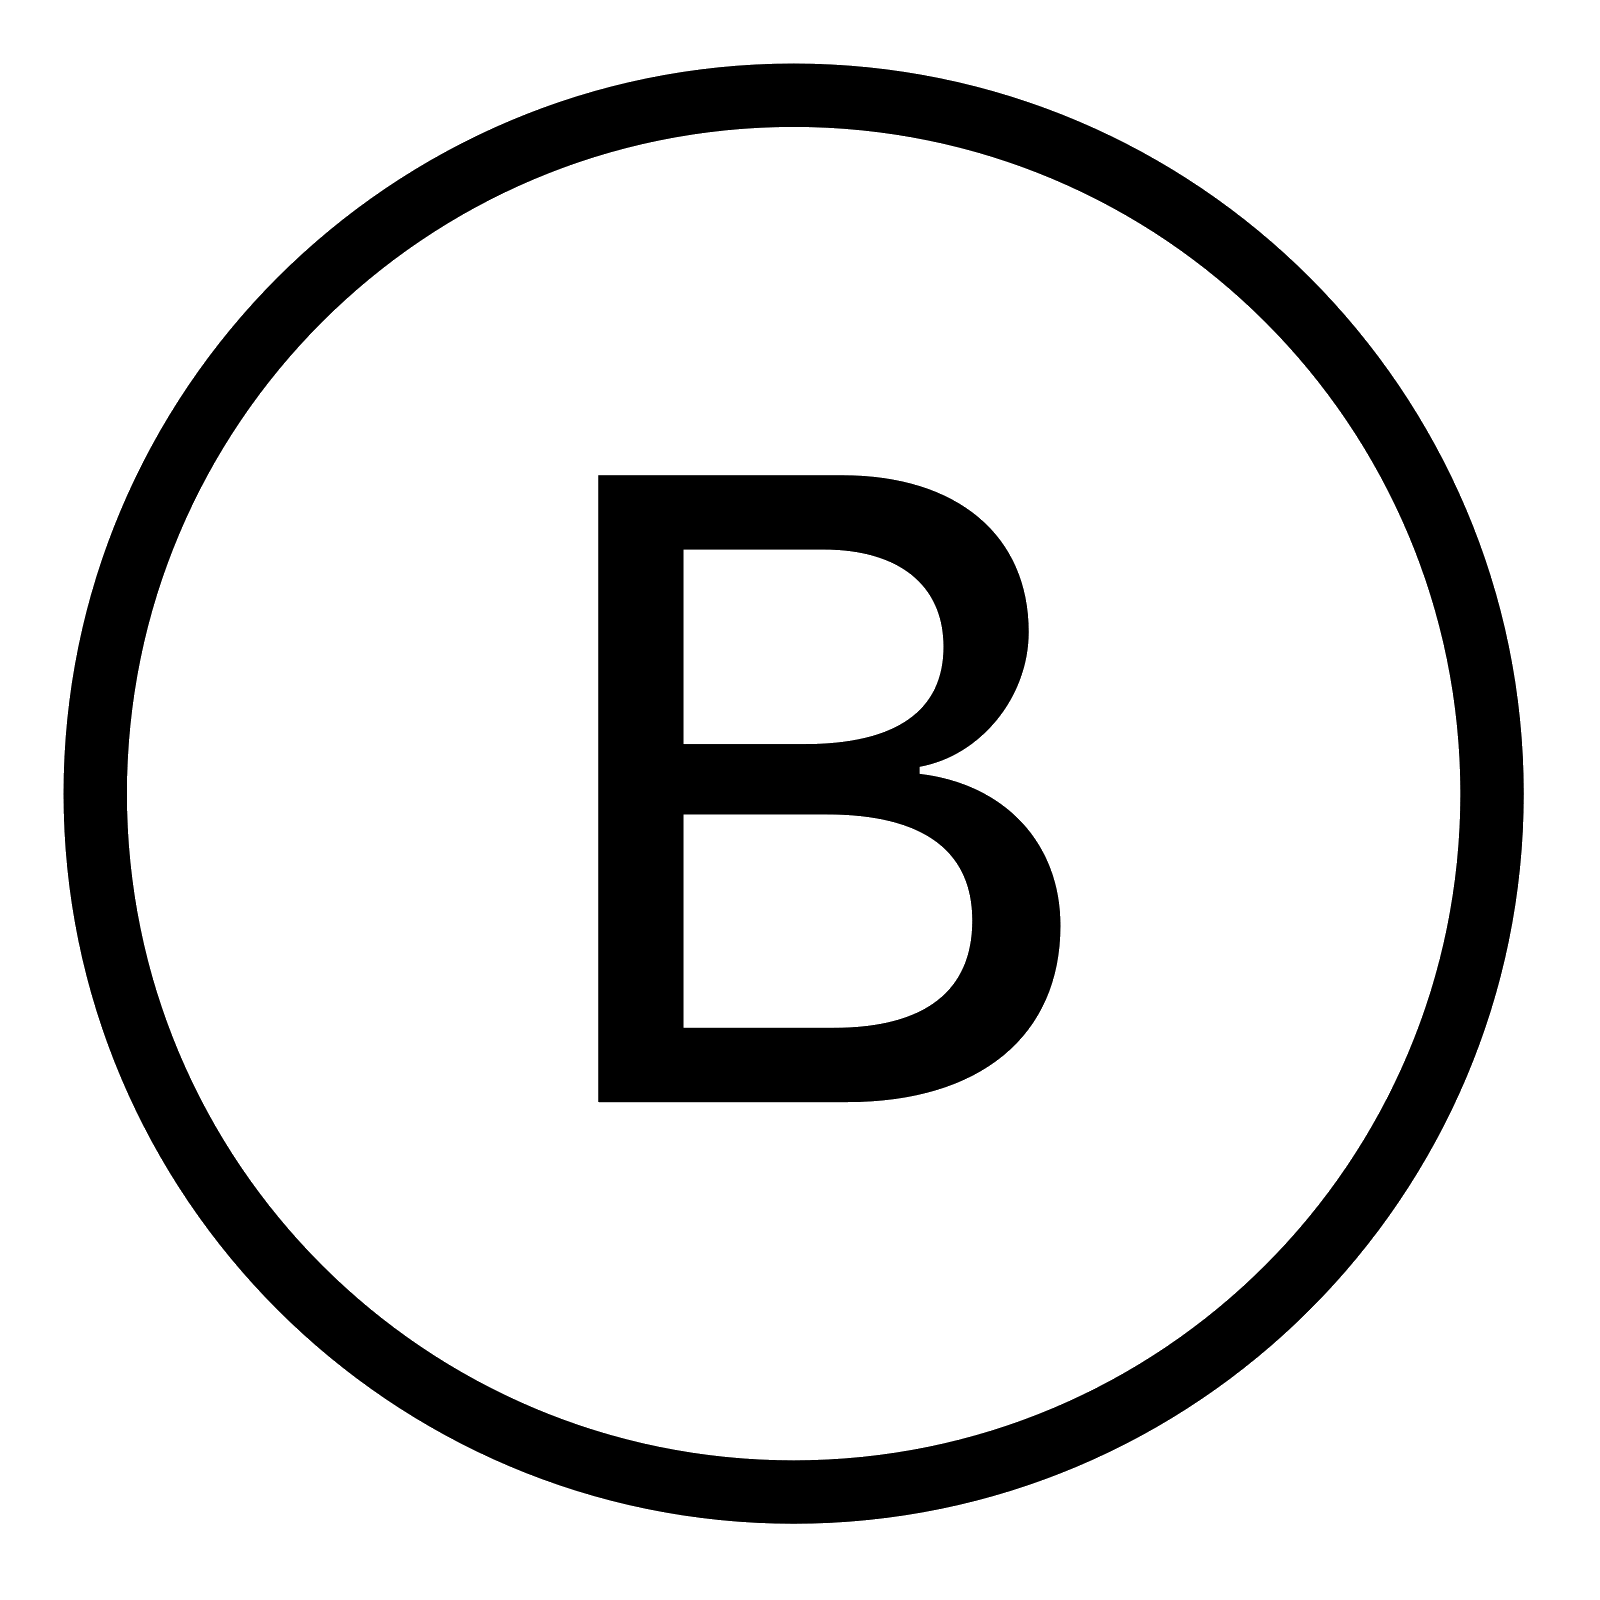 B in Circle Logo - Black White B In Circle Logo Png Images